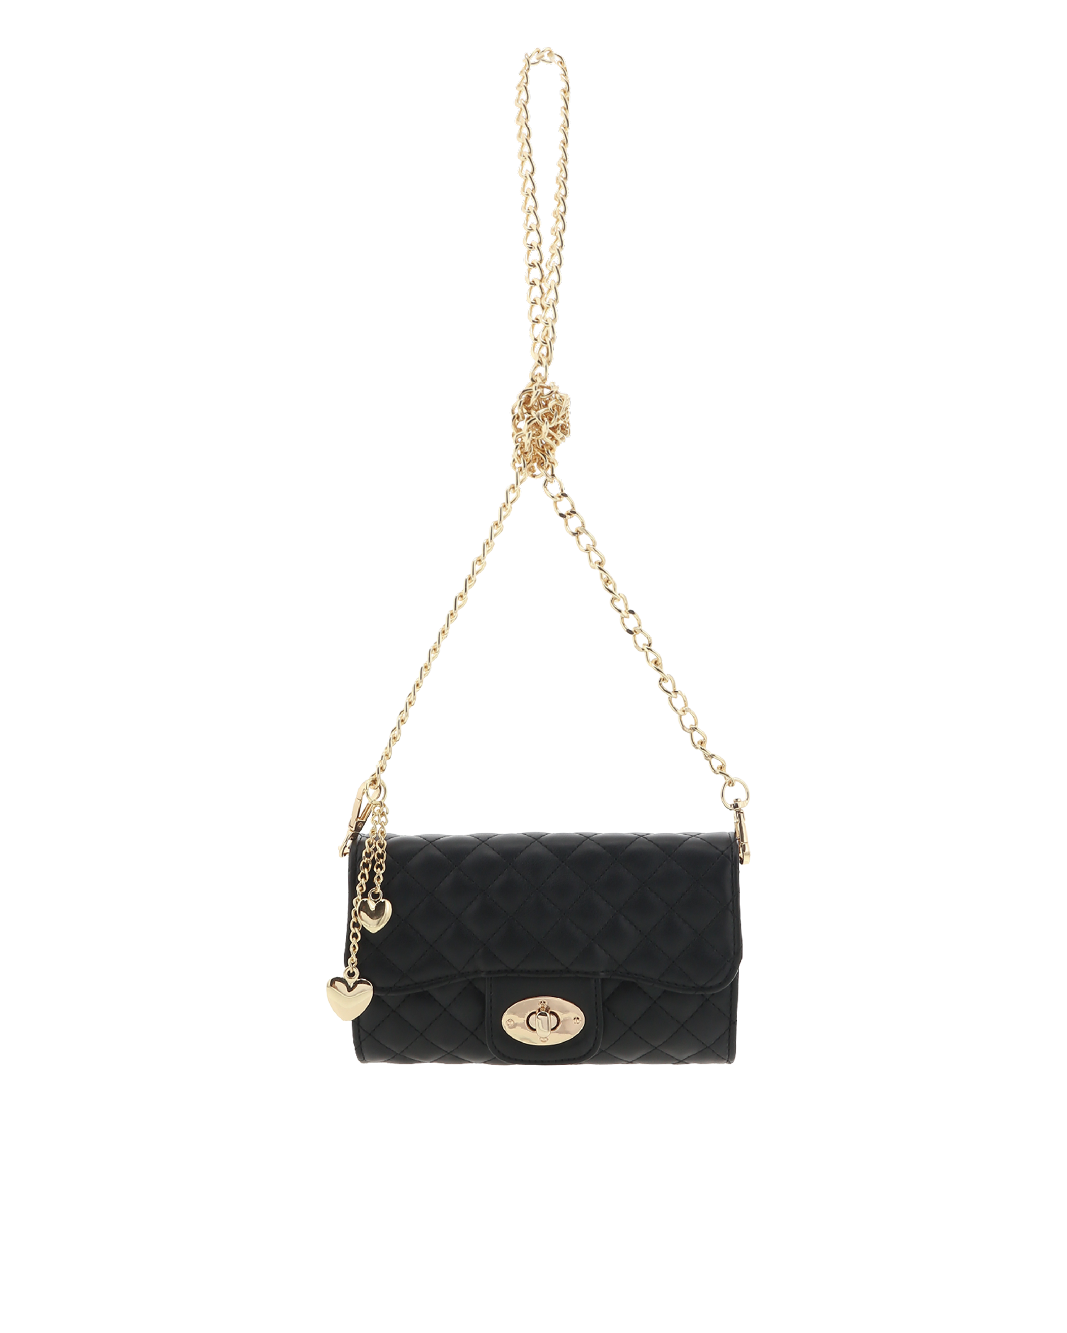 DAYTONA MULTI WEAR BAG - BLACK QUILTED-Handbags-Billini--Billini